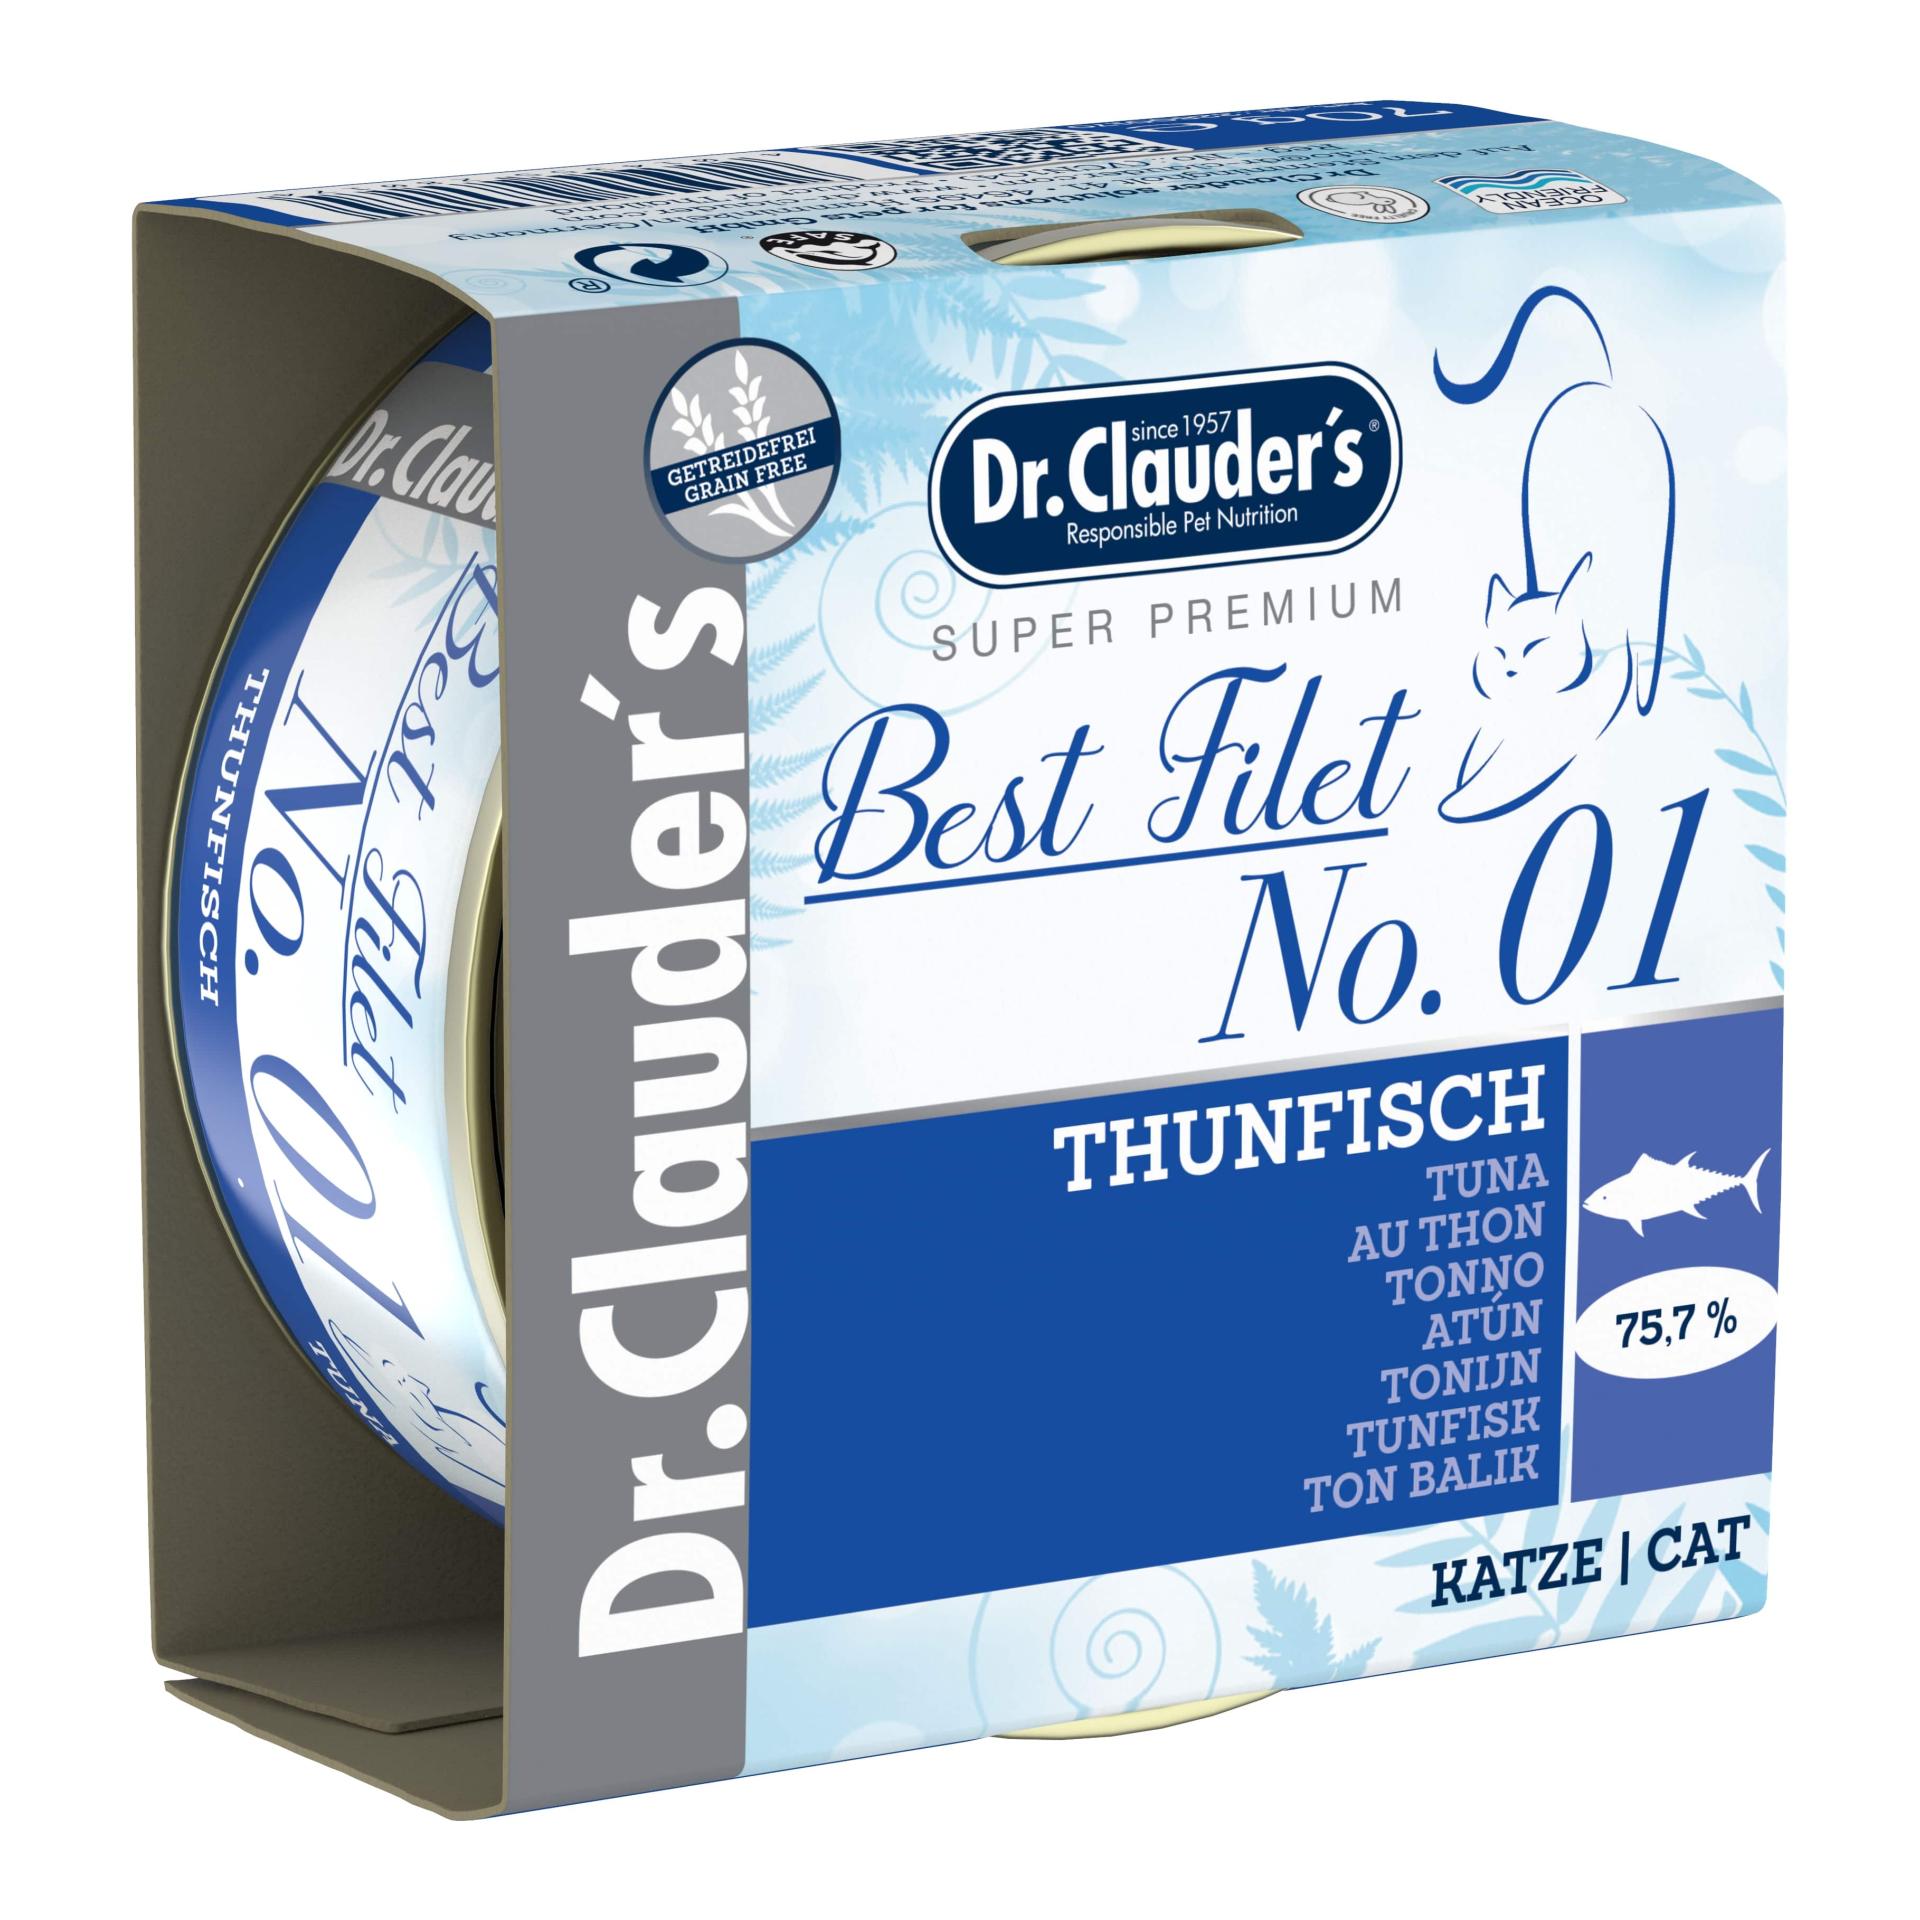 Image of Dr.Clauder's Best Filet No1 Thunfisch 70g - Blau - bei Hauptner.ch